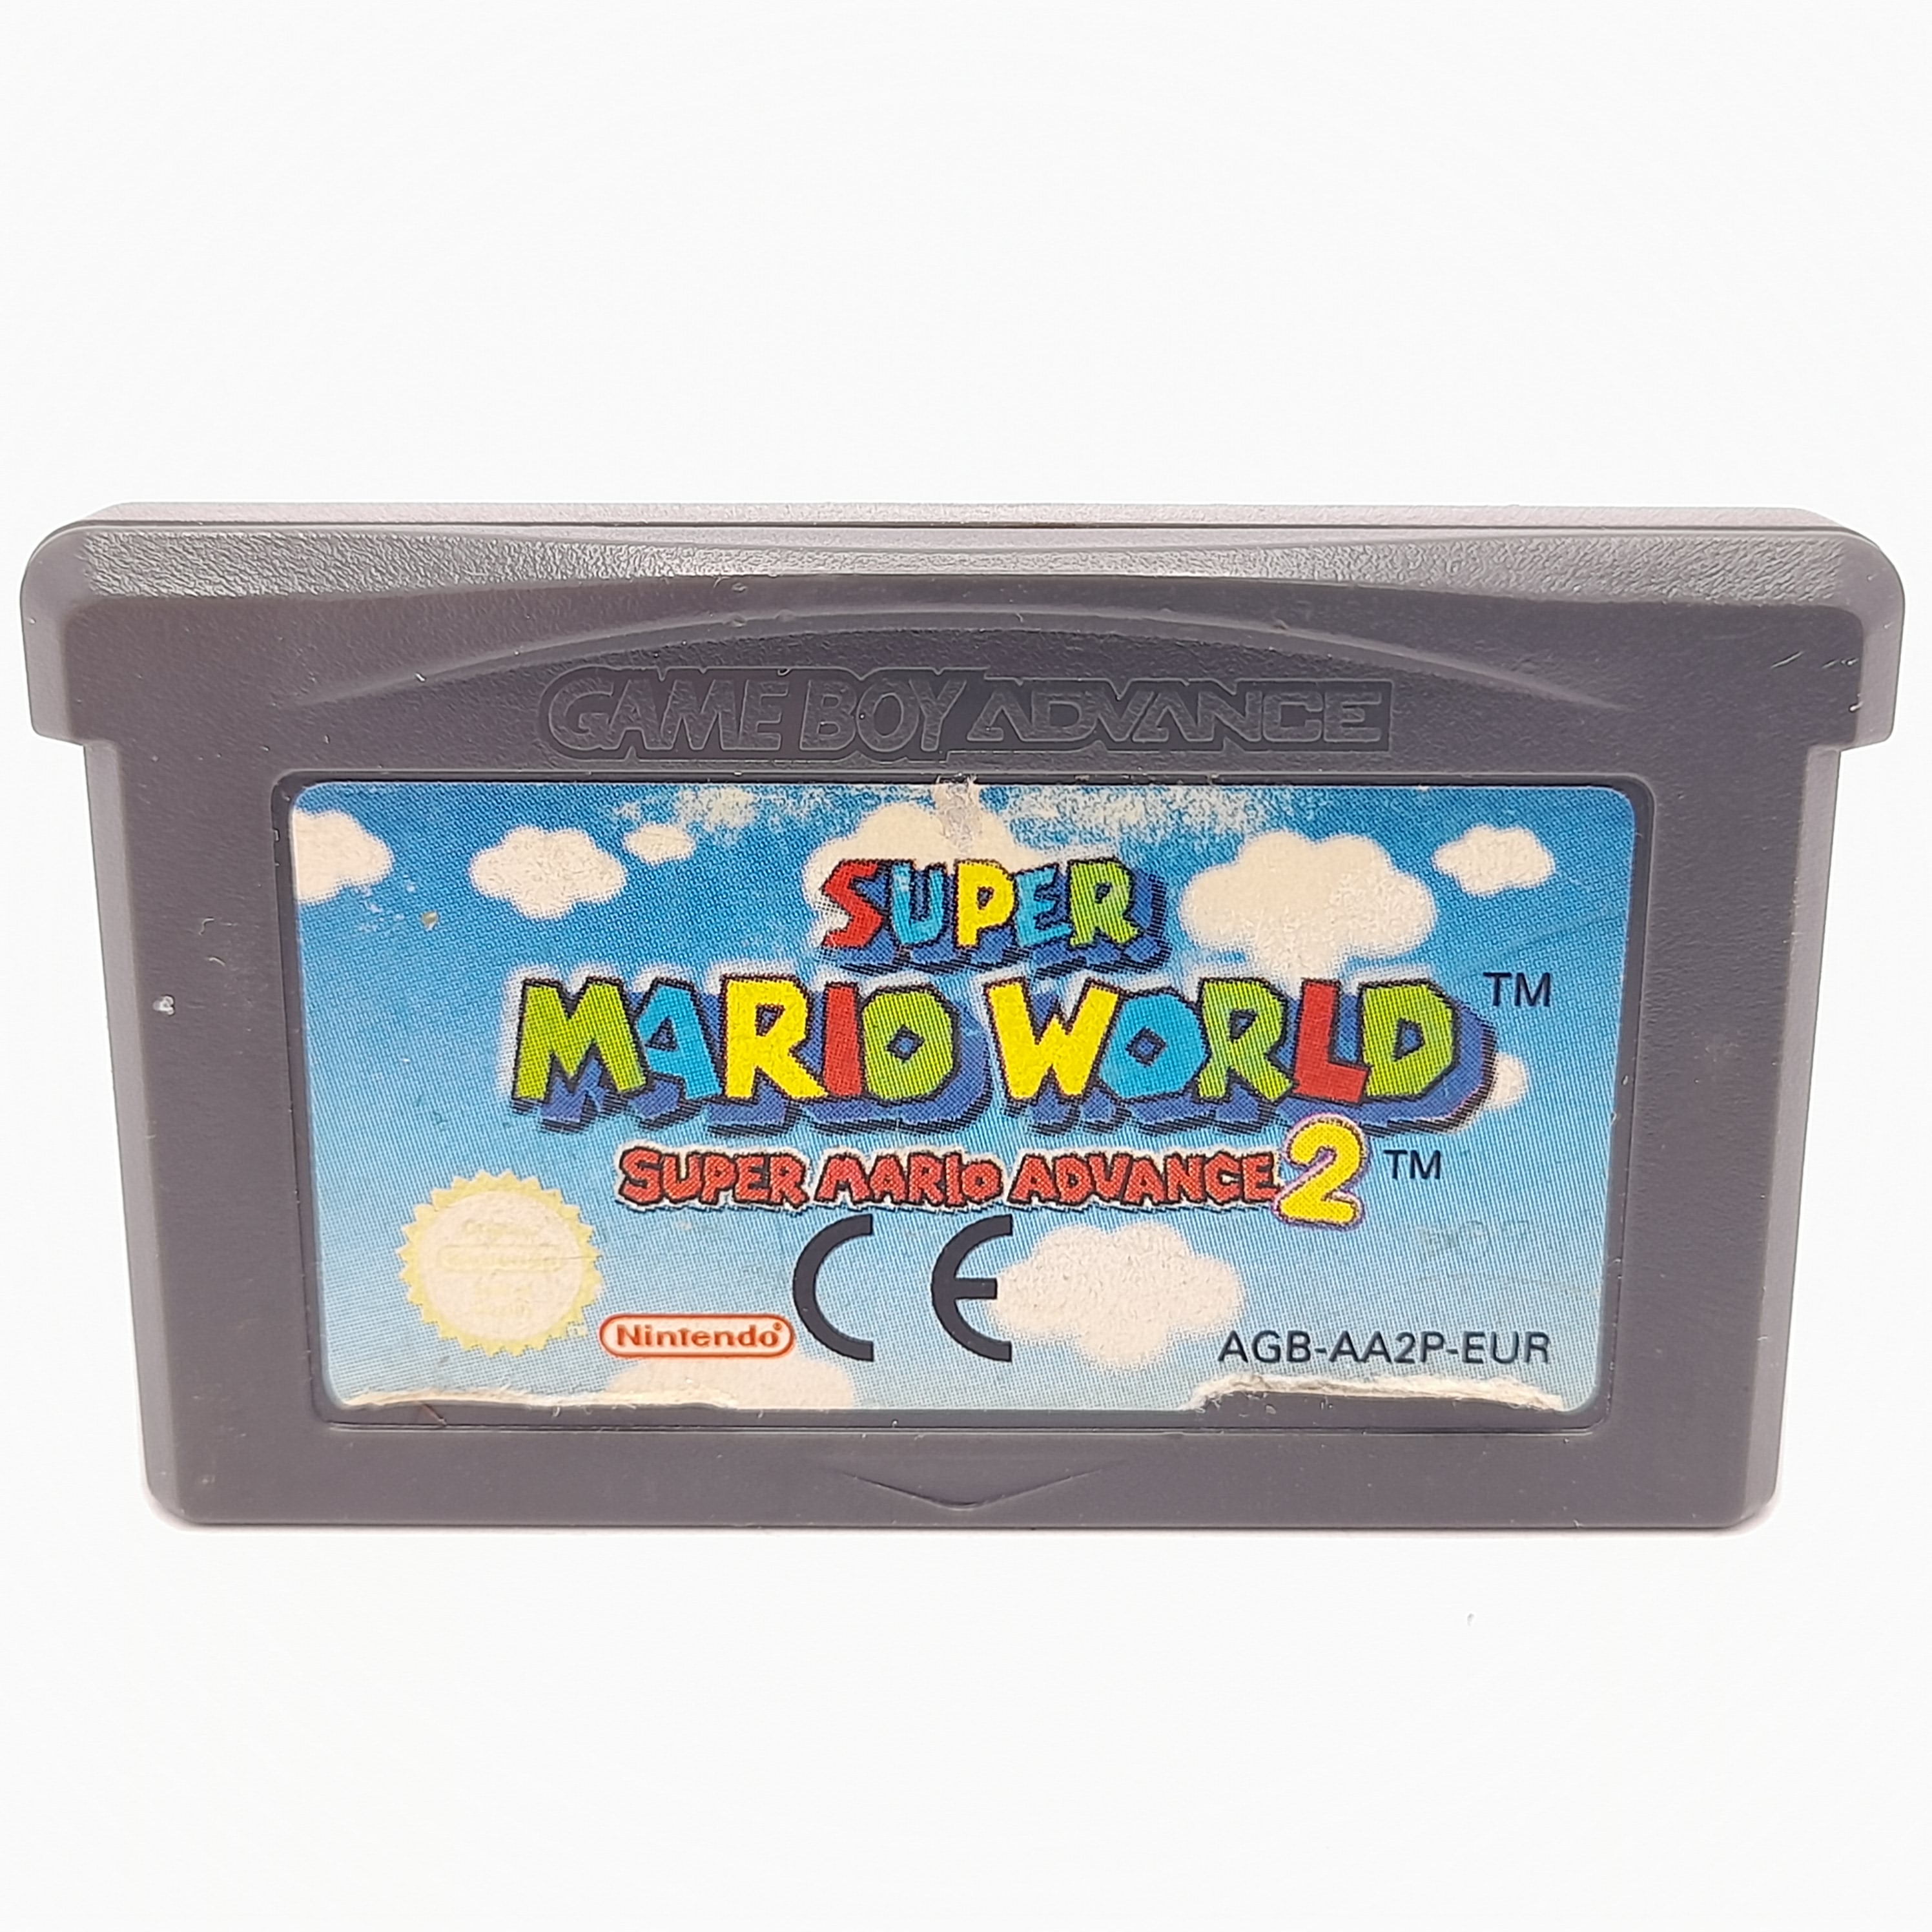 Foto van Super Mario World Super Mario Advance 2